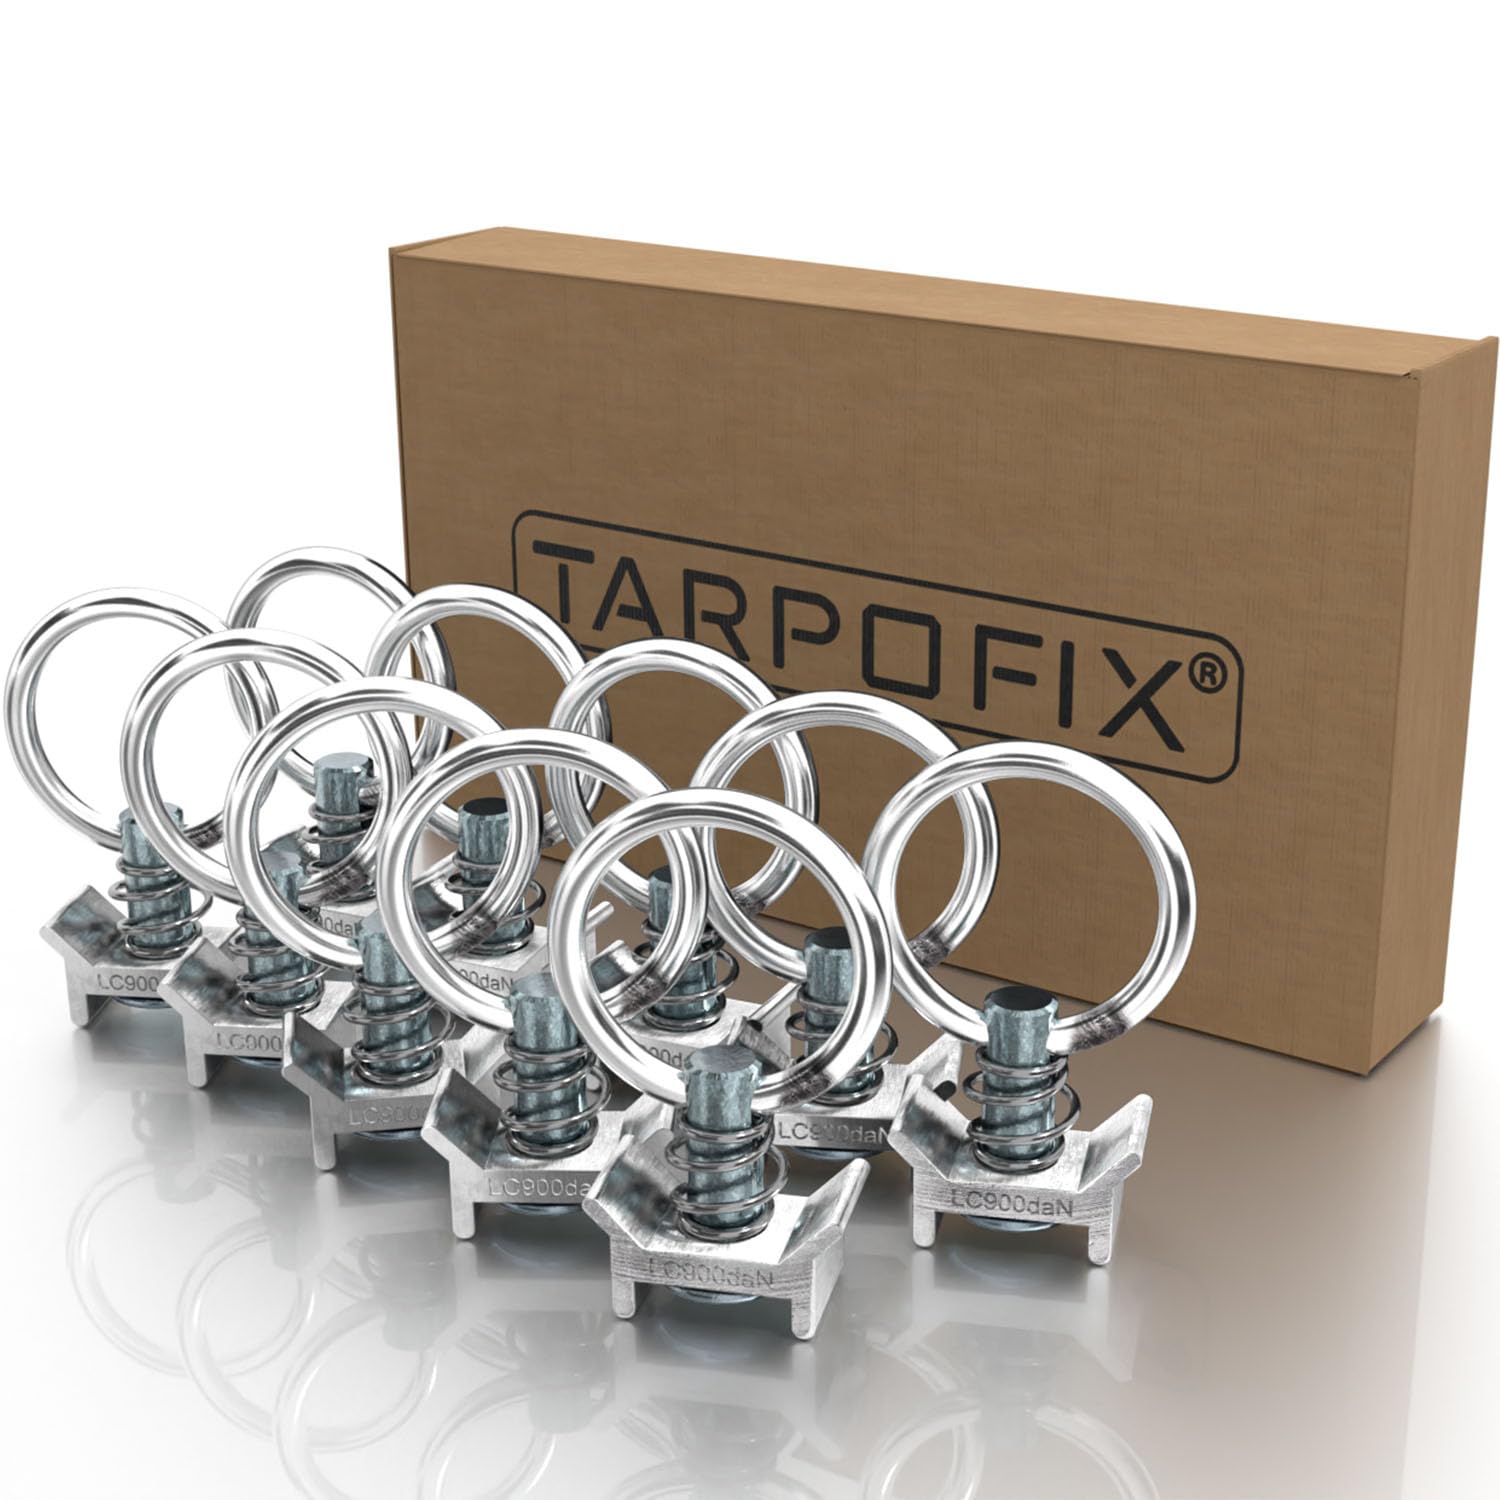 Tarpofix® Airlineschiene Fitting Ring (10 Stück) | Airline Fitting Zurröse mit 900 daN (900kg) Tragfähigkeit | Einfachendbeschlag für Zurrschienen | Flugösen zur Ladungssicherung in Anhänger & PKW von Tarpofix